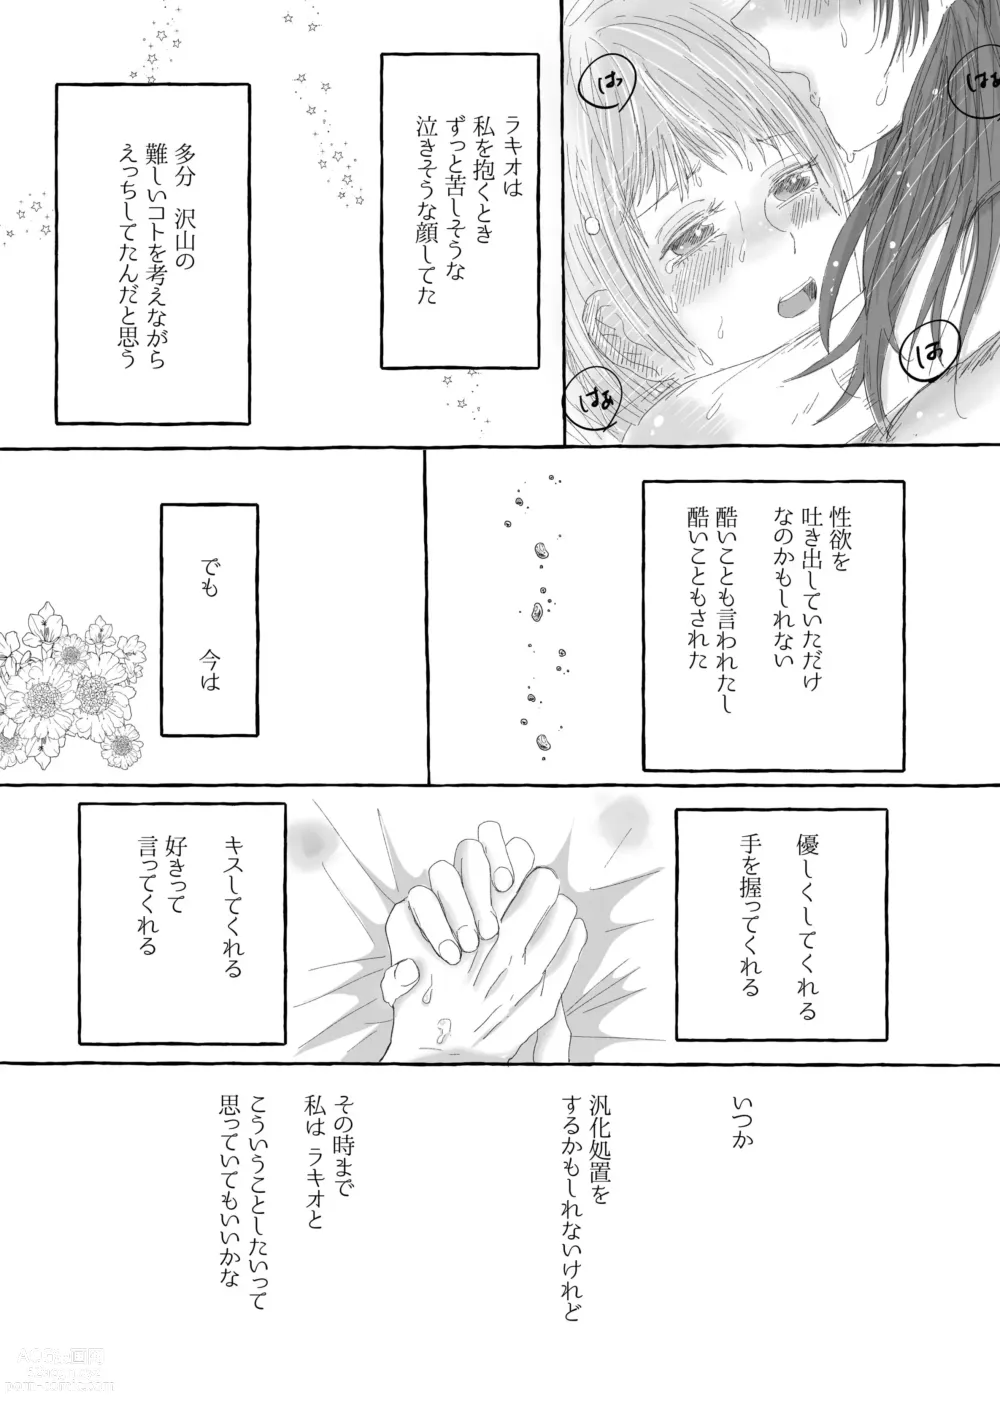 Page 16 of doujinshi Boku Dake no Kizuato